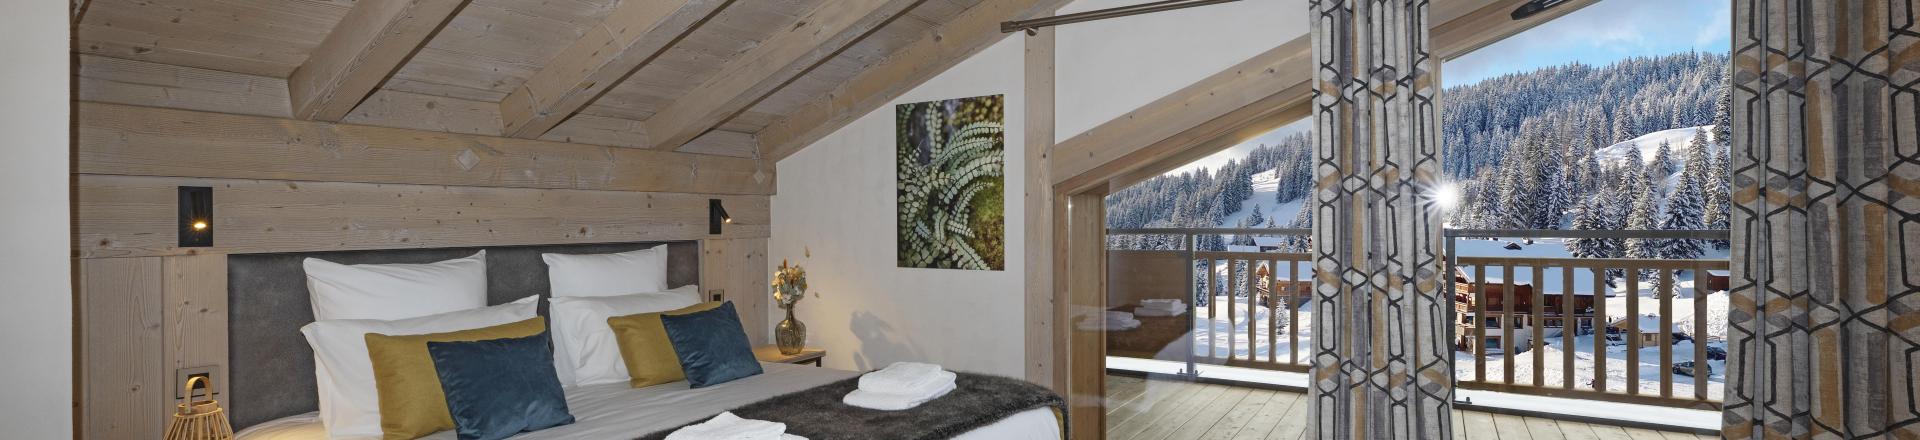 Location au ski Appartement duplex 4 pièces 8 personnes - Résidence Hameau de l'Ours - Manigod l'Etale - Chambre